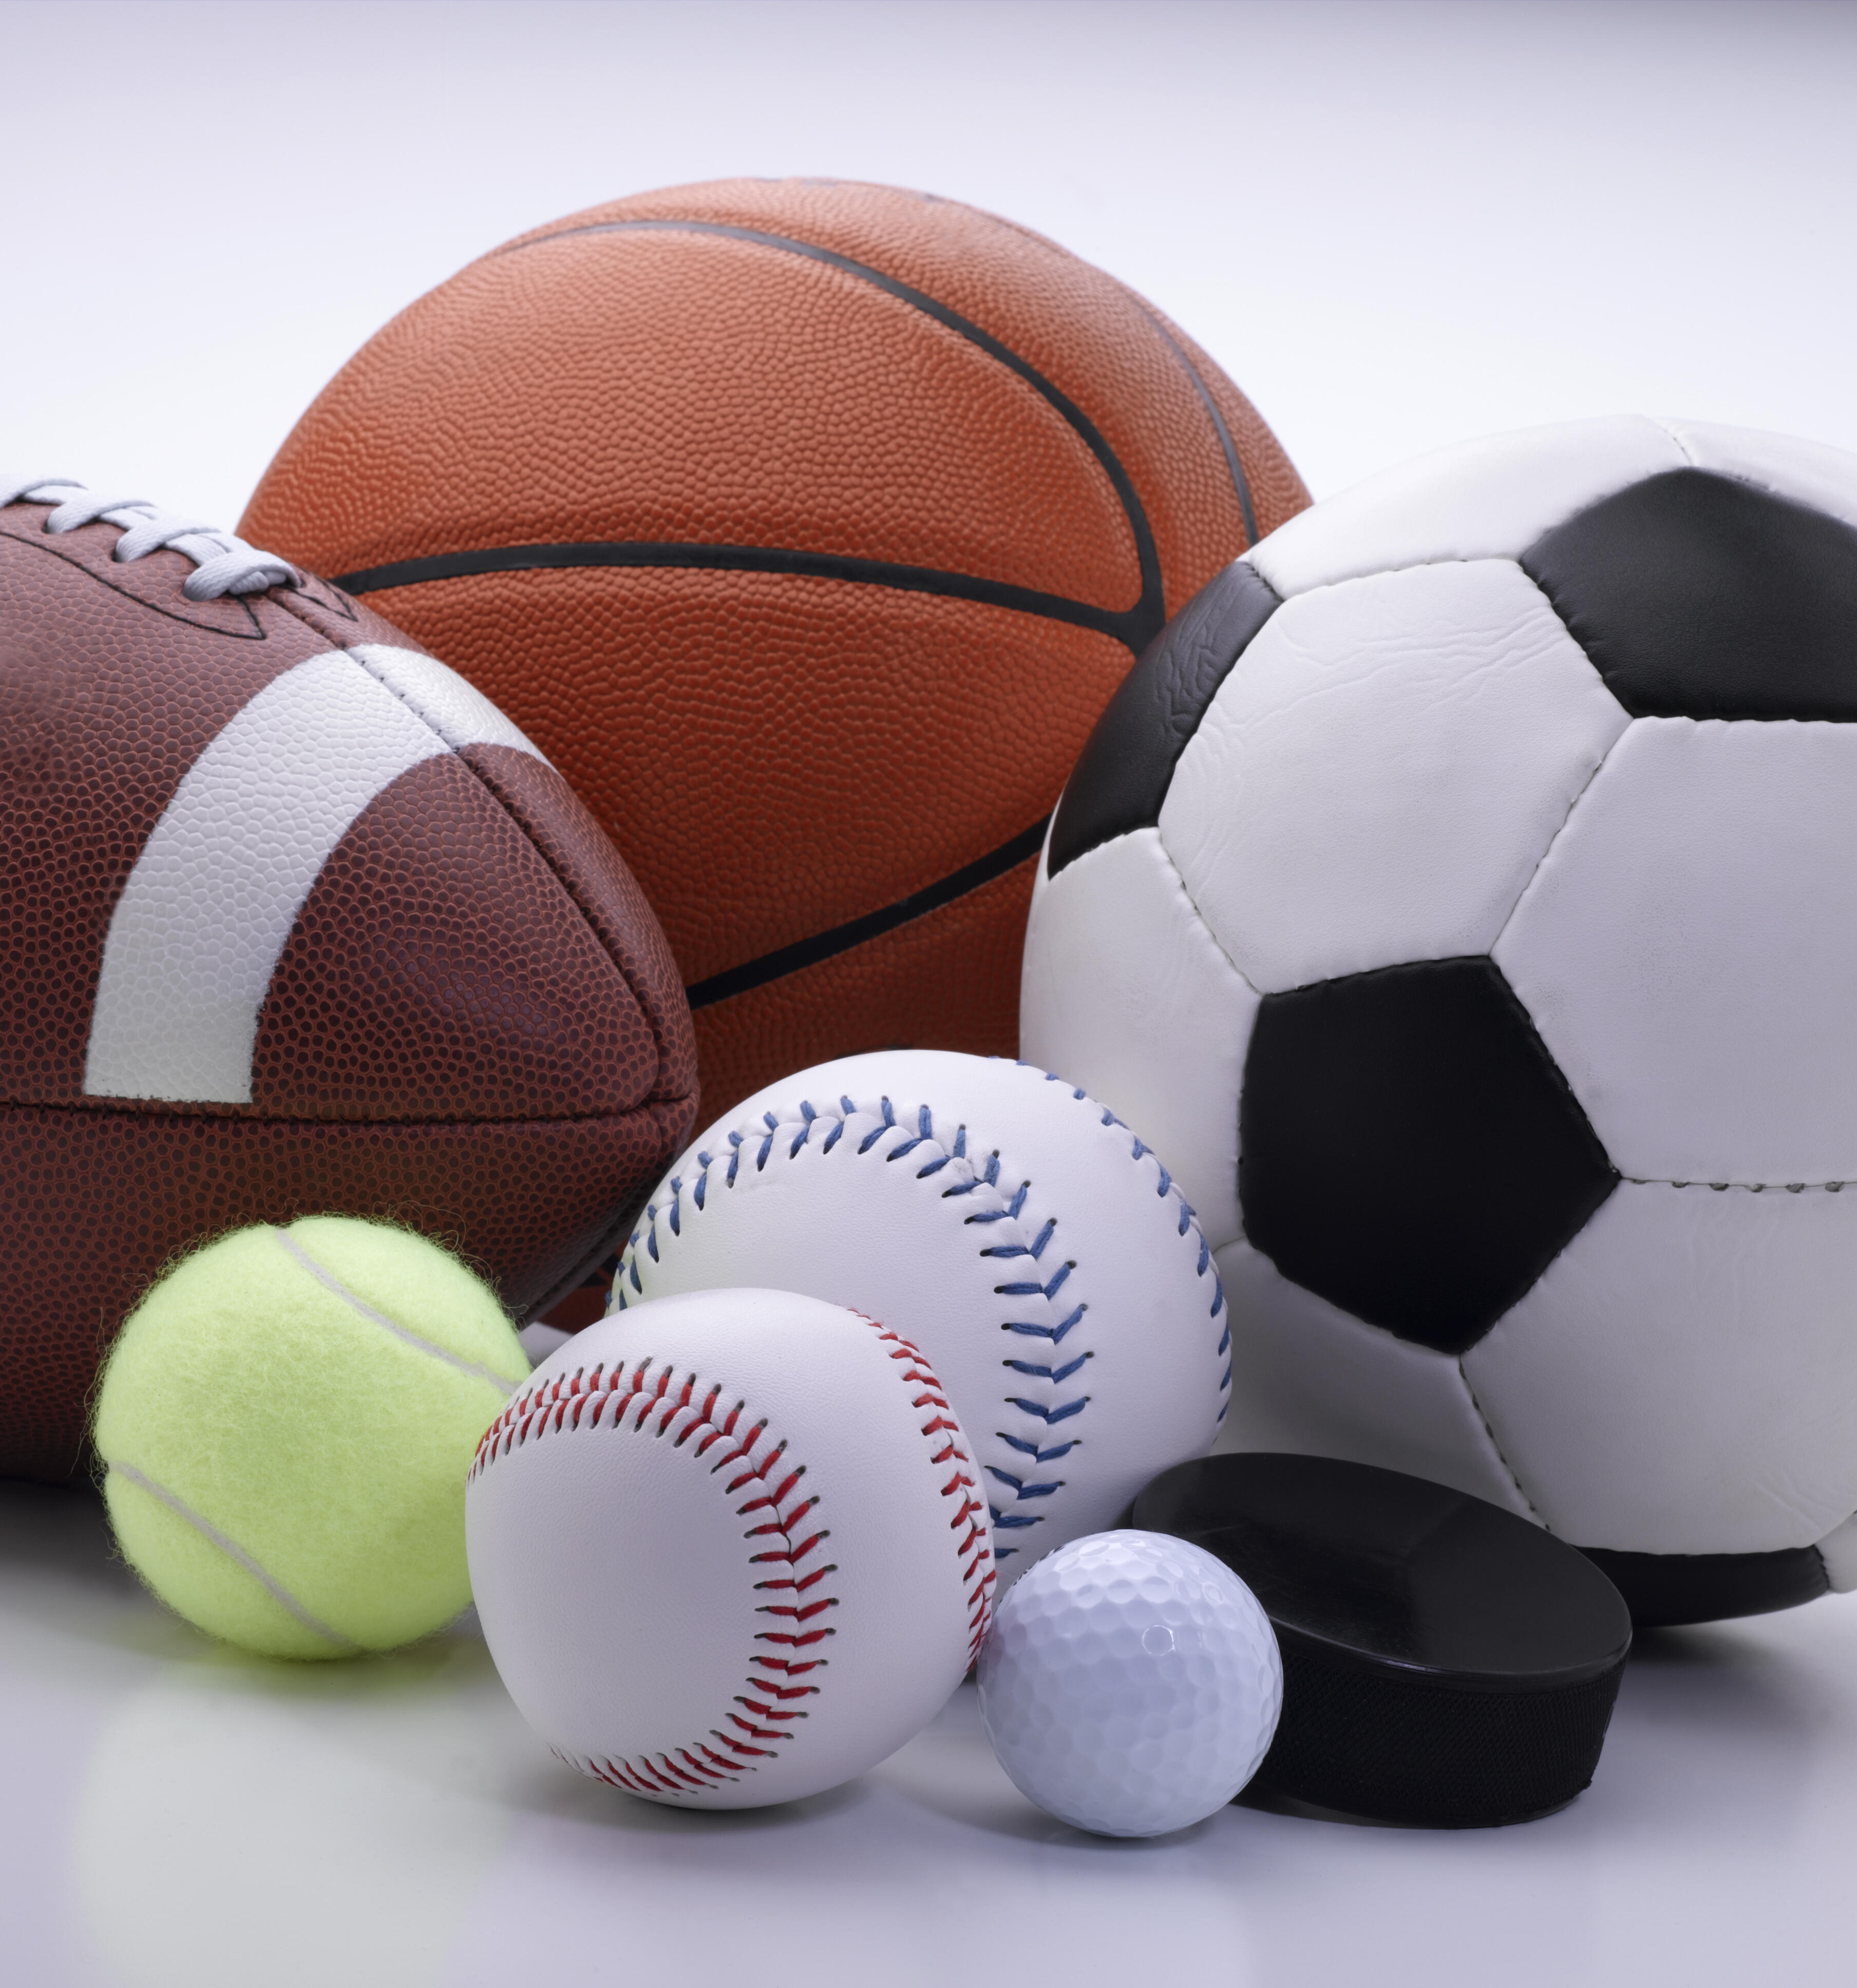 Sports items. Спортивные мячи. Мяч (спорт). Мячи разные спортивные. Игровые виды спорта.